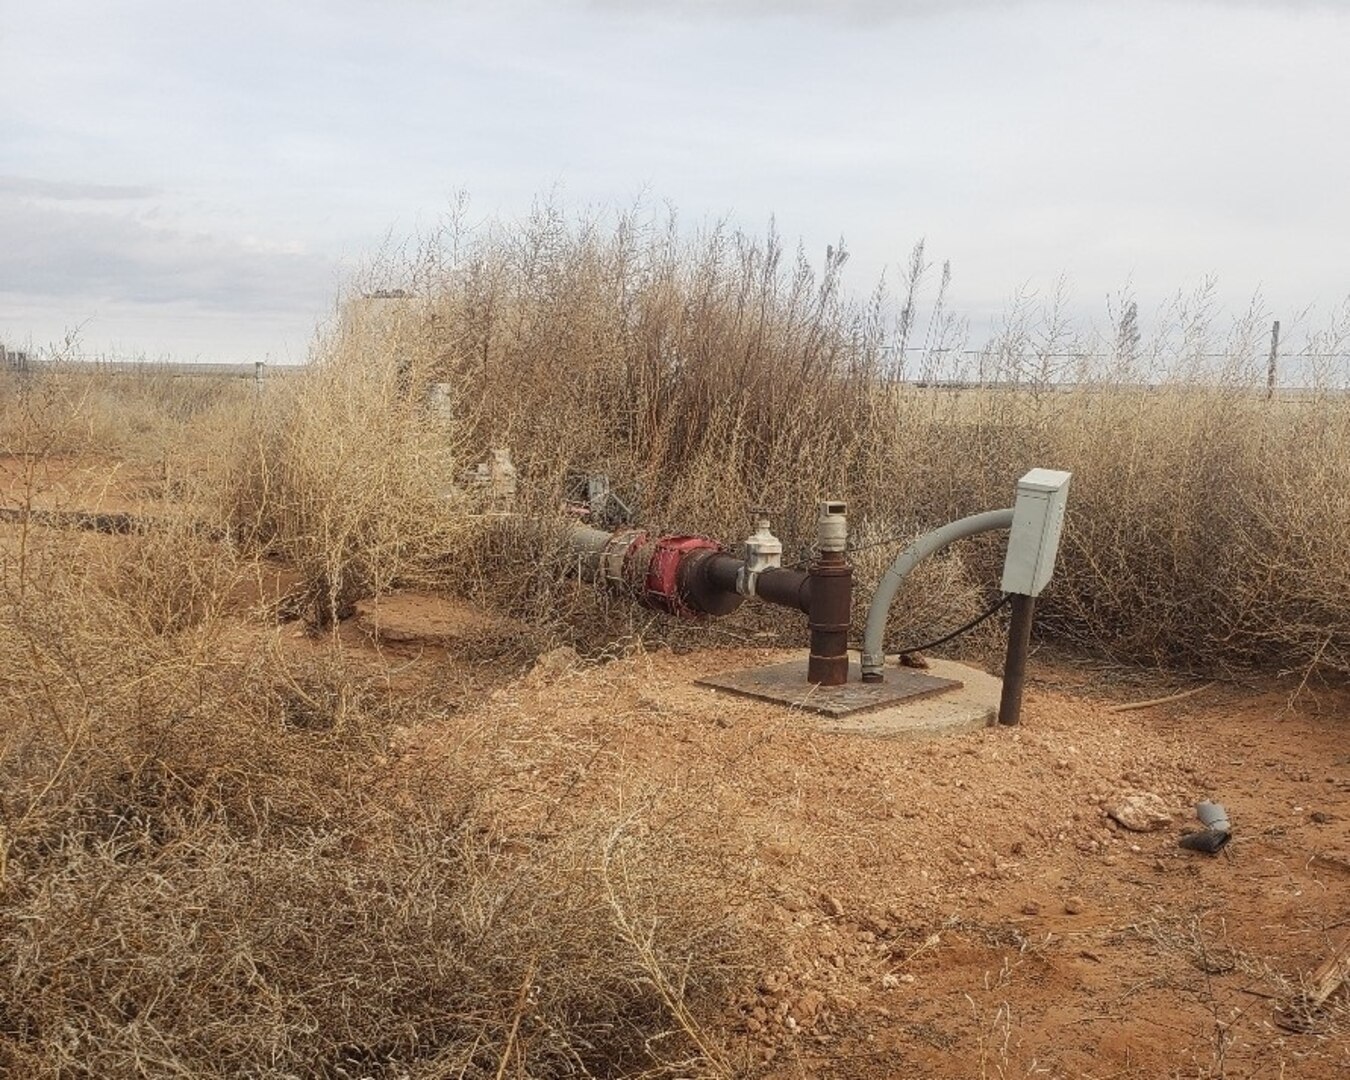 An irrigation well